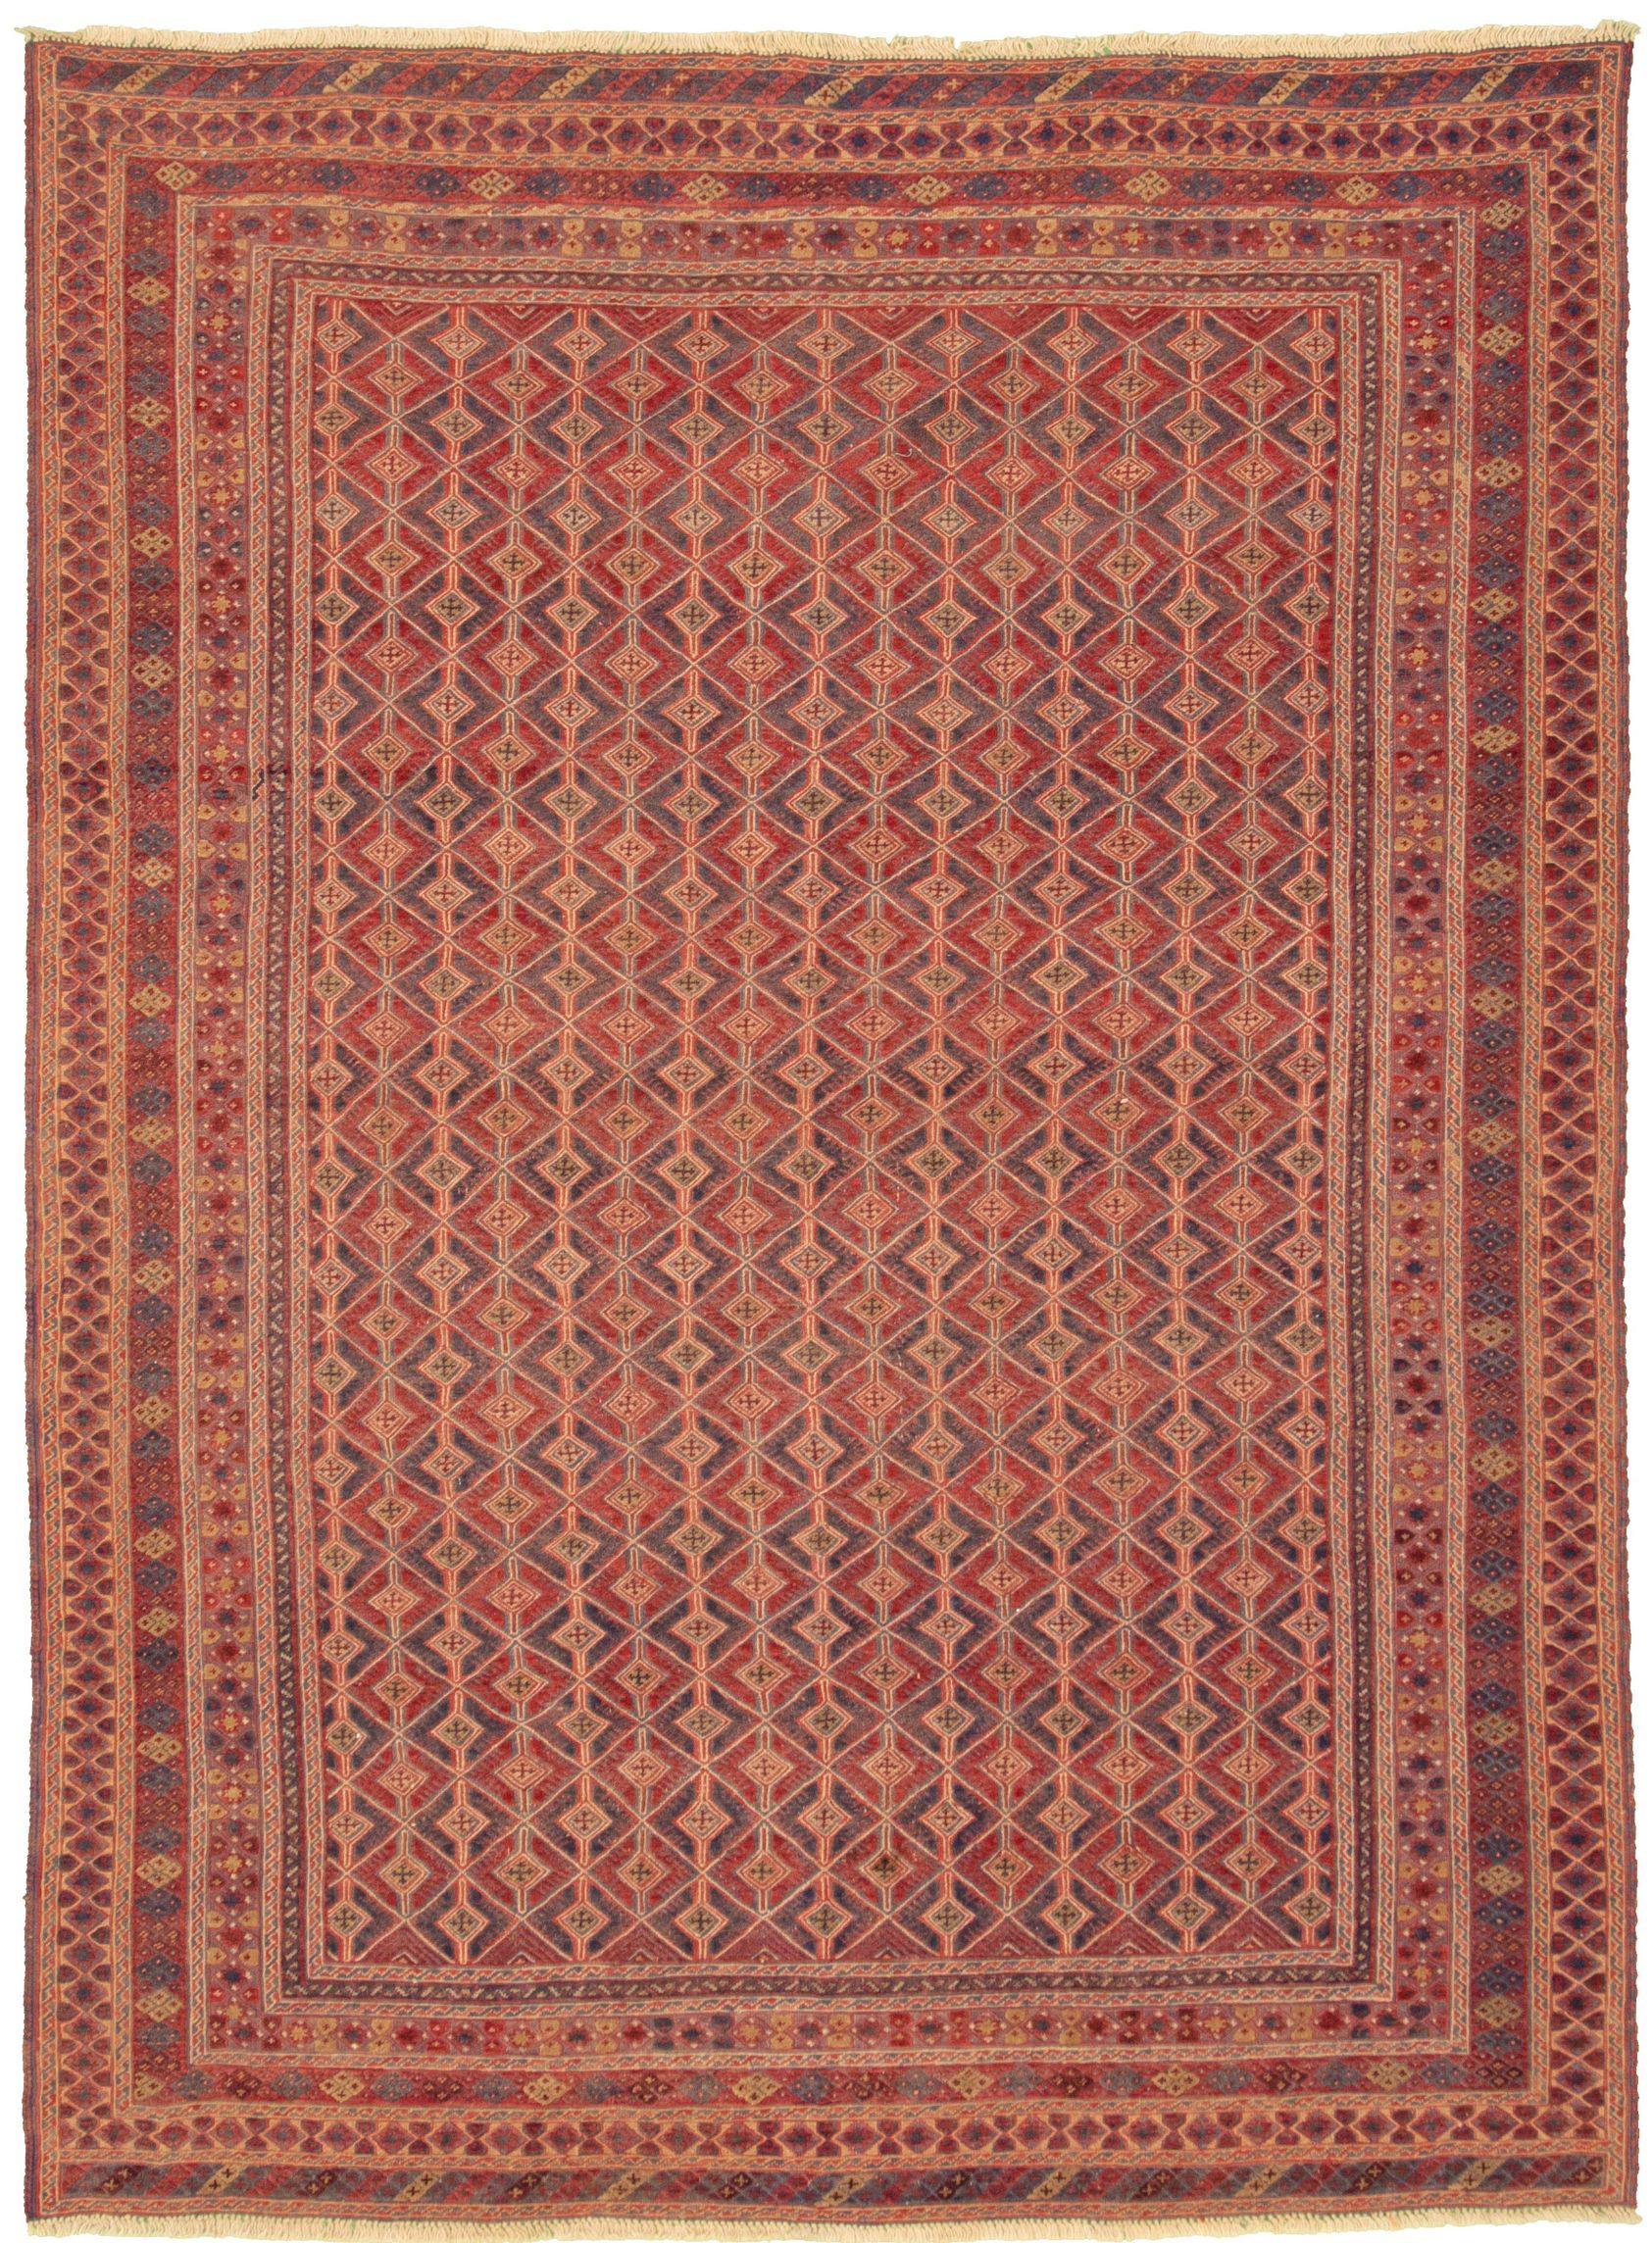 Hand-knotted Tajik Caucasian Dark Red Wool Rug 6'6" x 9'2"  Size: 6'6" x 9'2"  